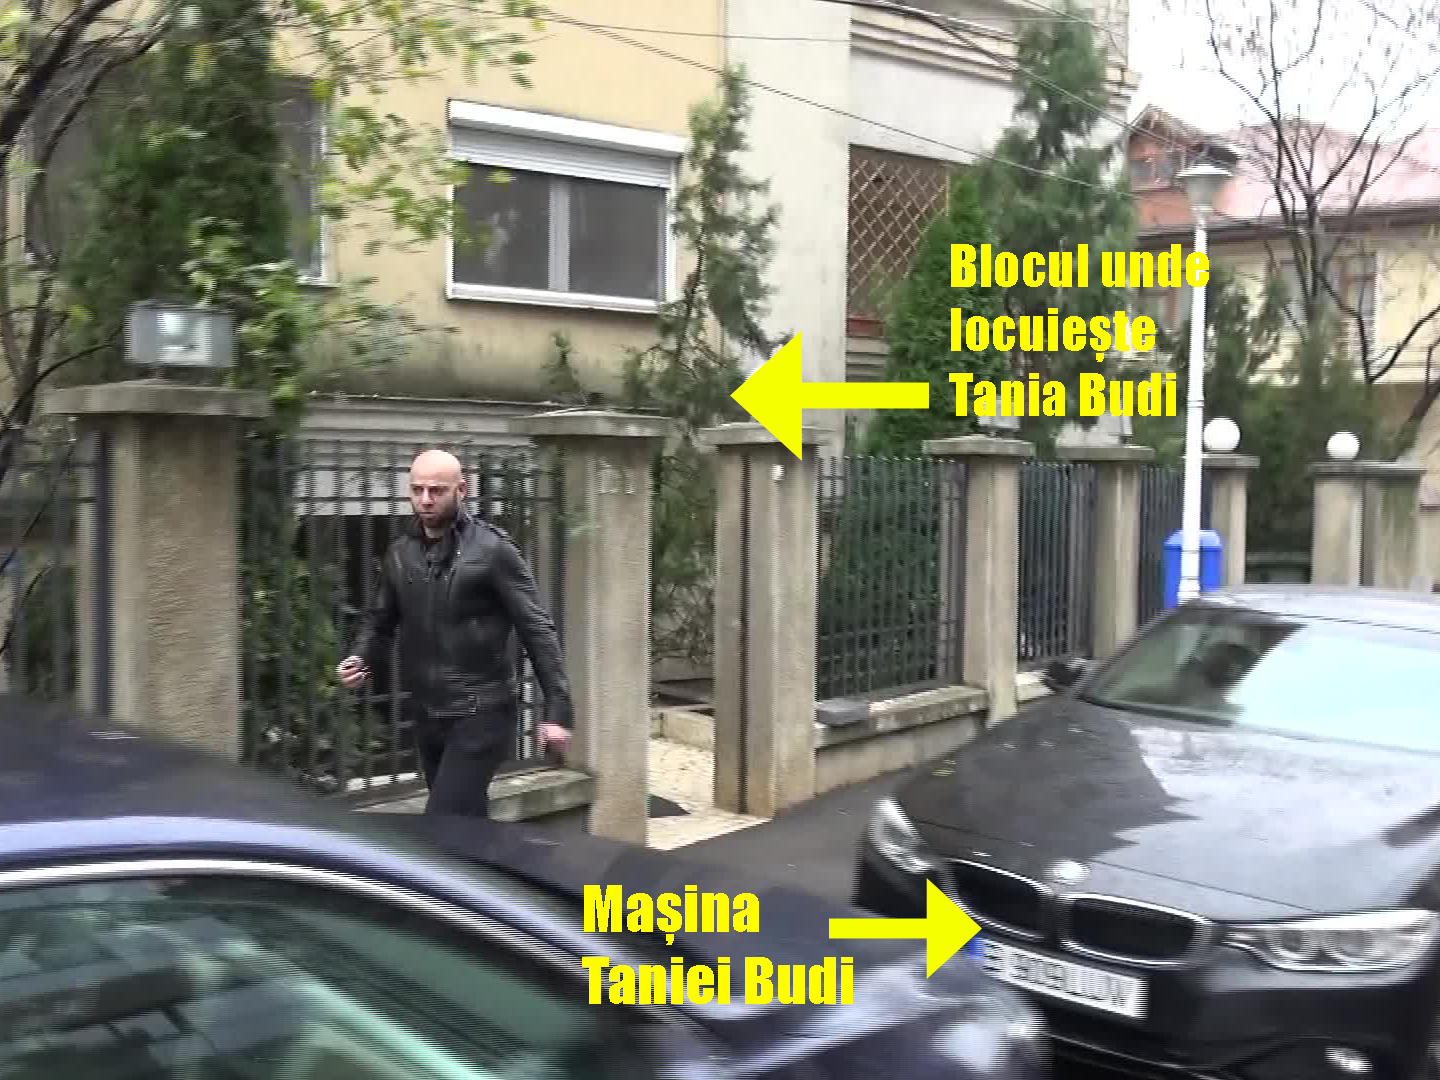 La sfârşitul anului trecut, fostul mijlocaş de la Dinamo a fost fotografiat ieşind din locuinţa Taniei Budi